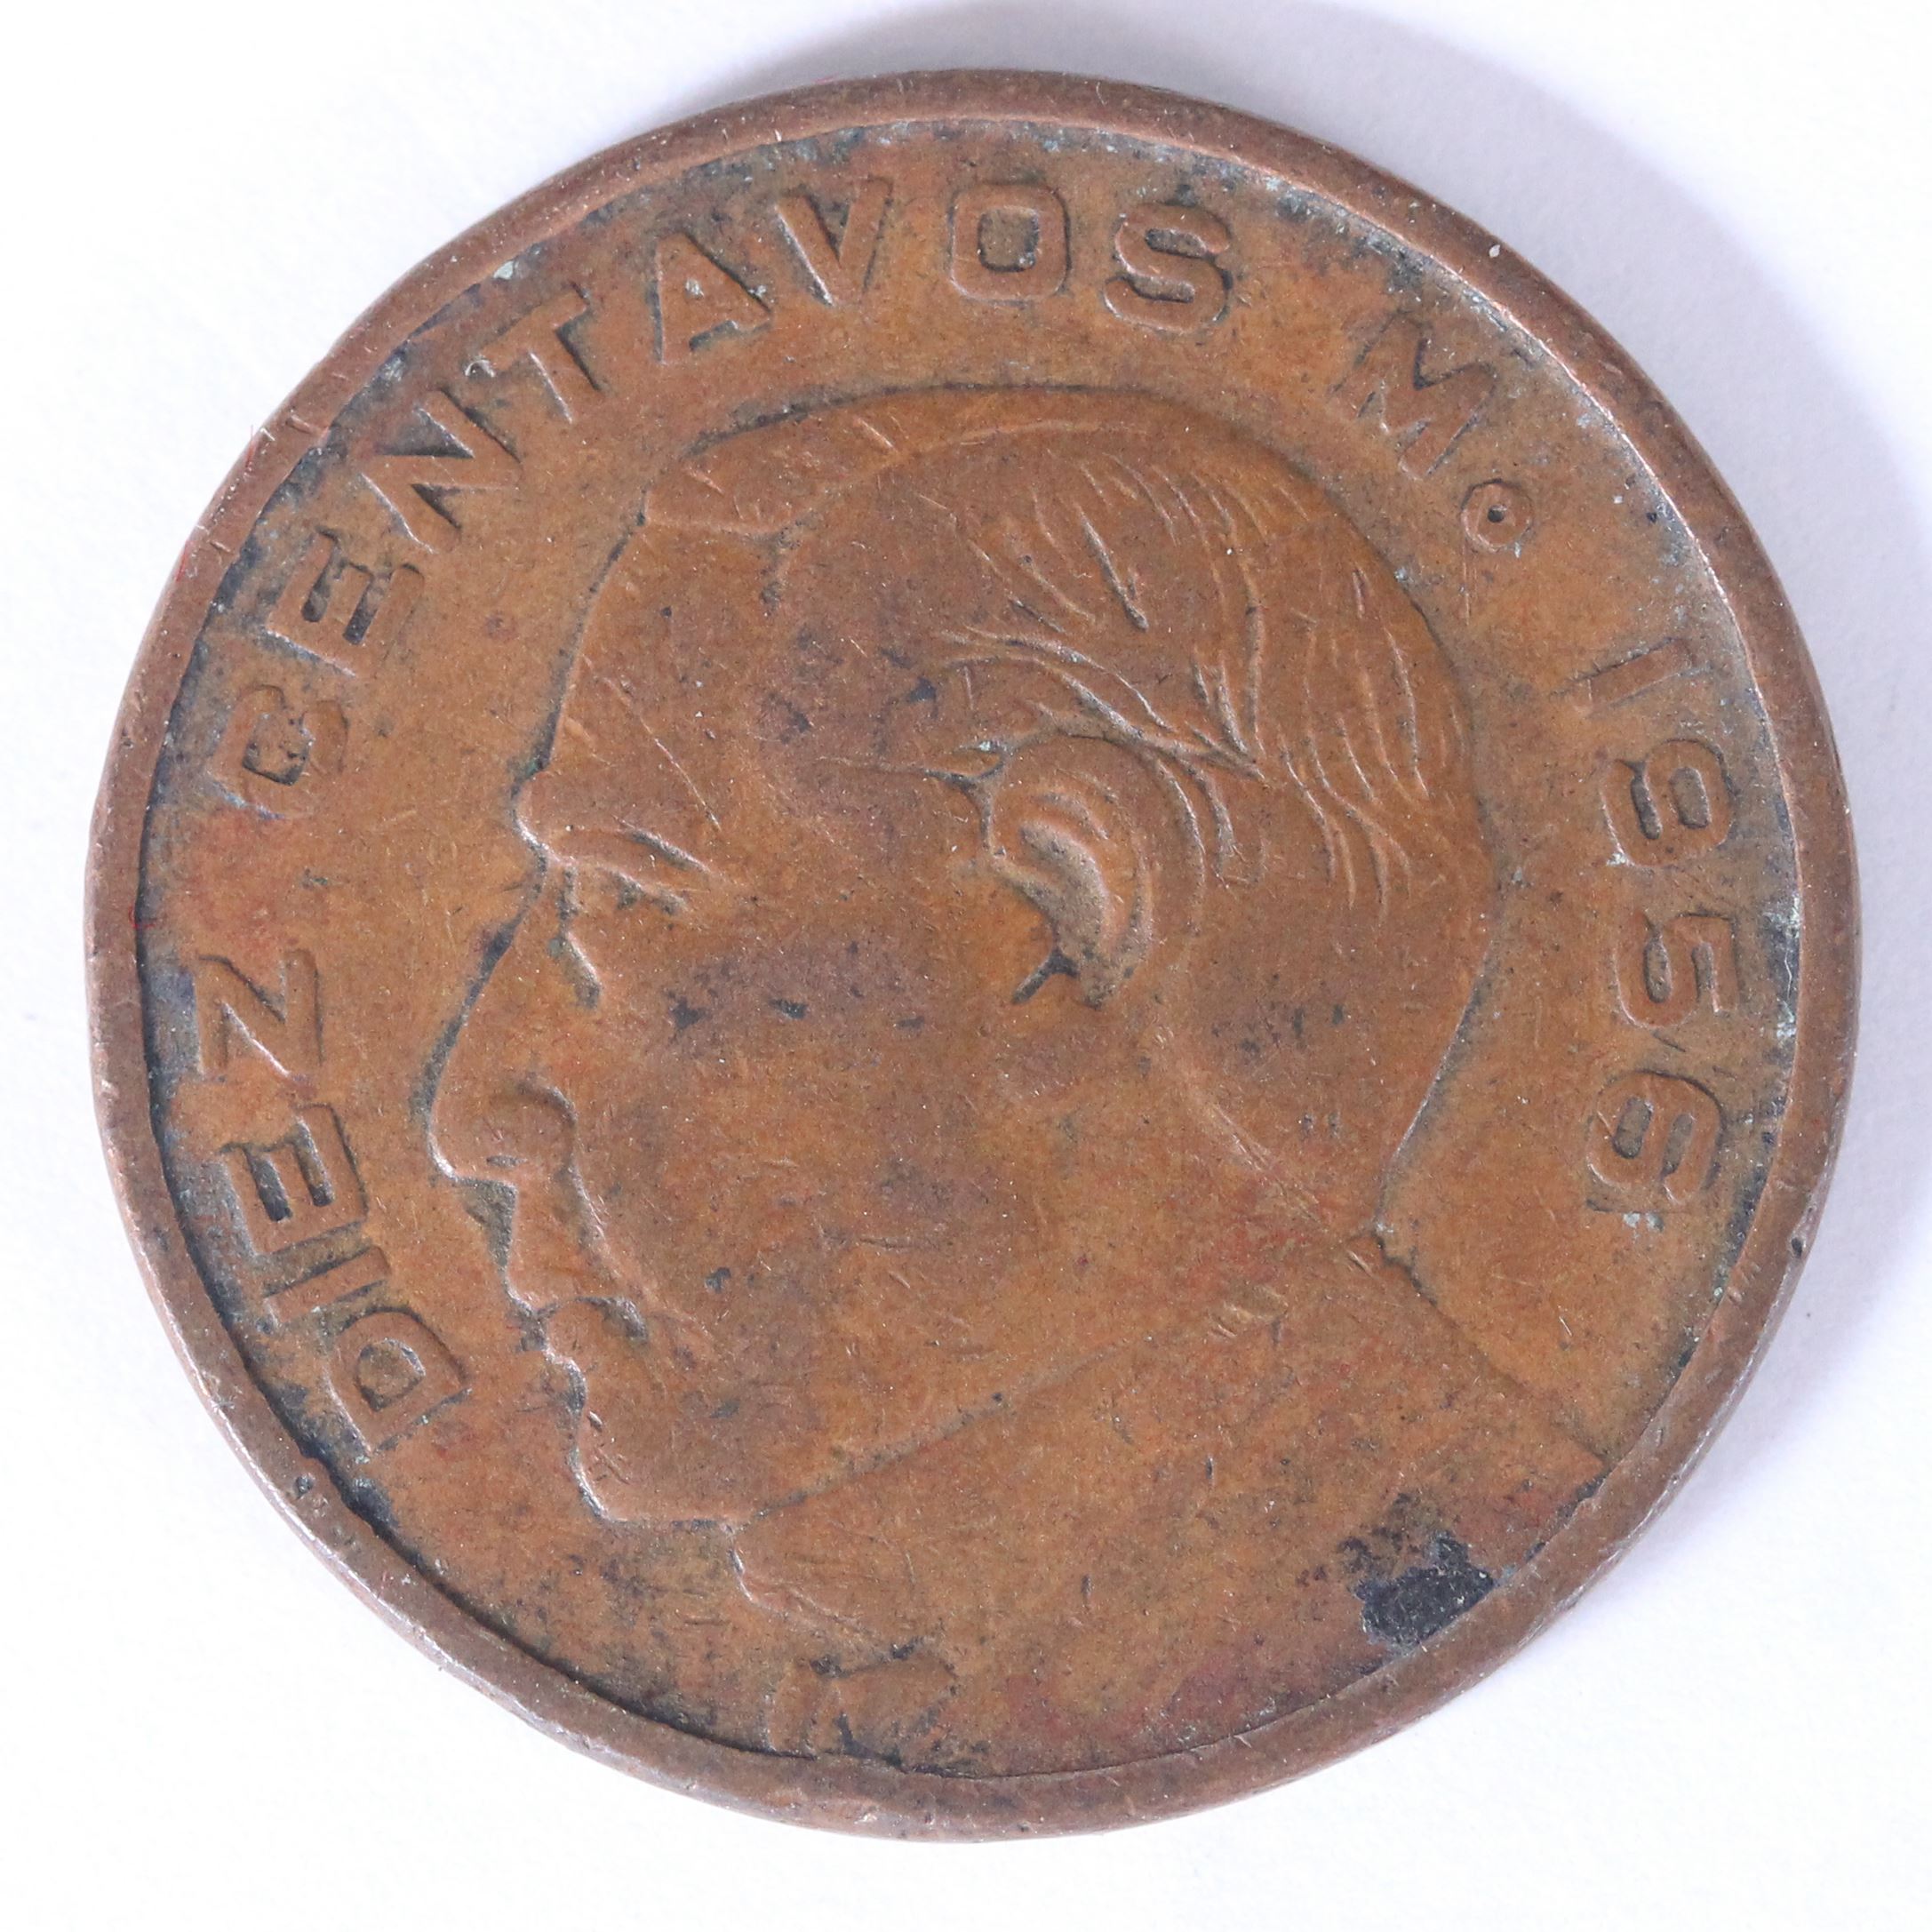 メキシコ 1956年 10センタボ 銅貨 VF | ミスターコインズ